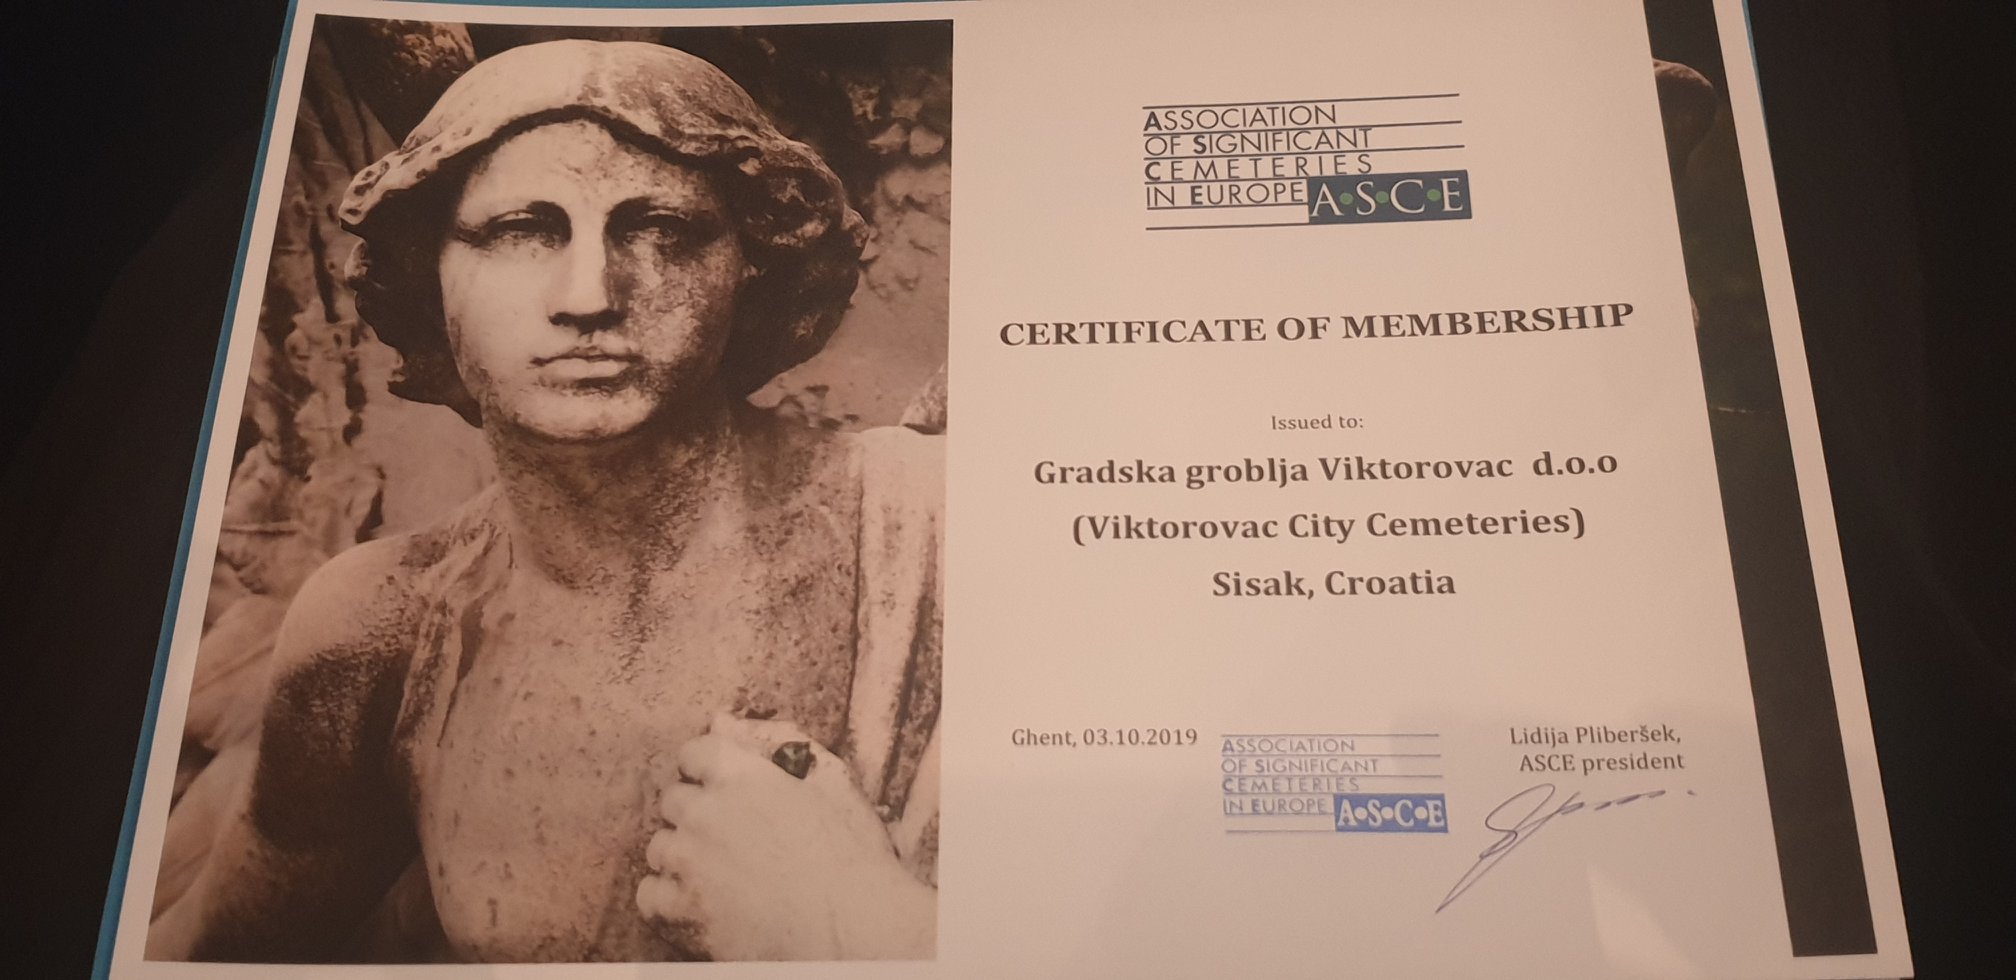 You are currently viewing Sisačko Gradsko groblje postalo je članom Udruženja značajnih groblja u Europi